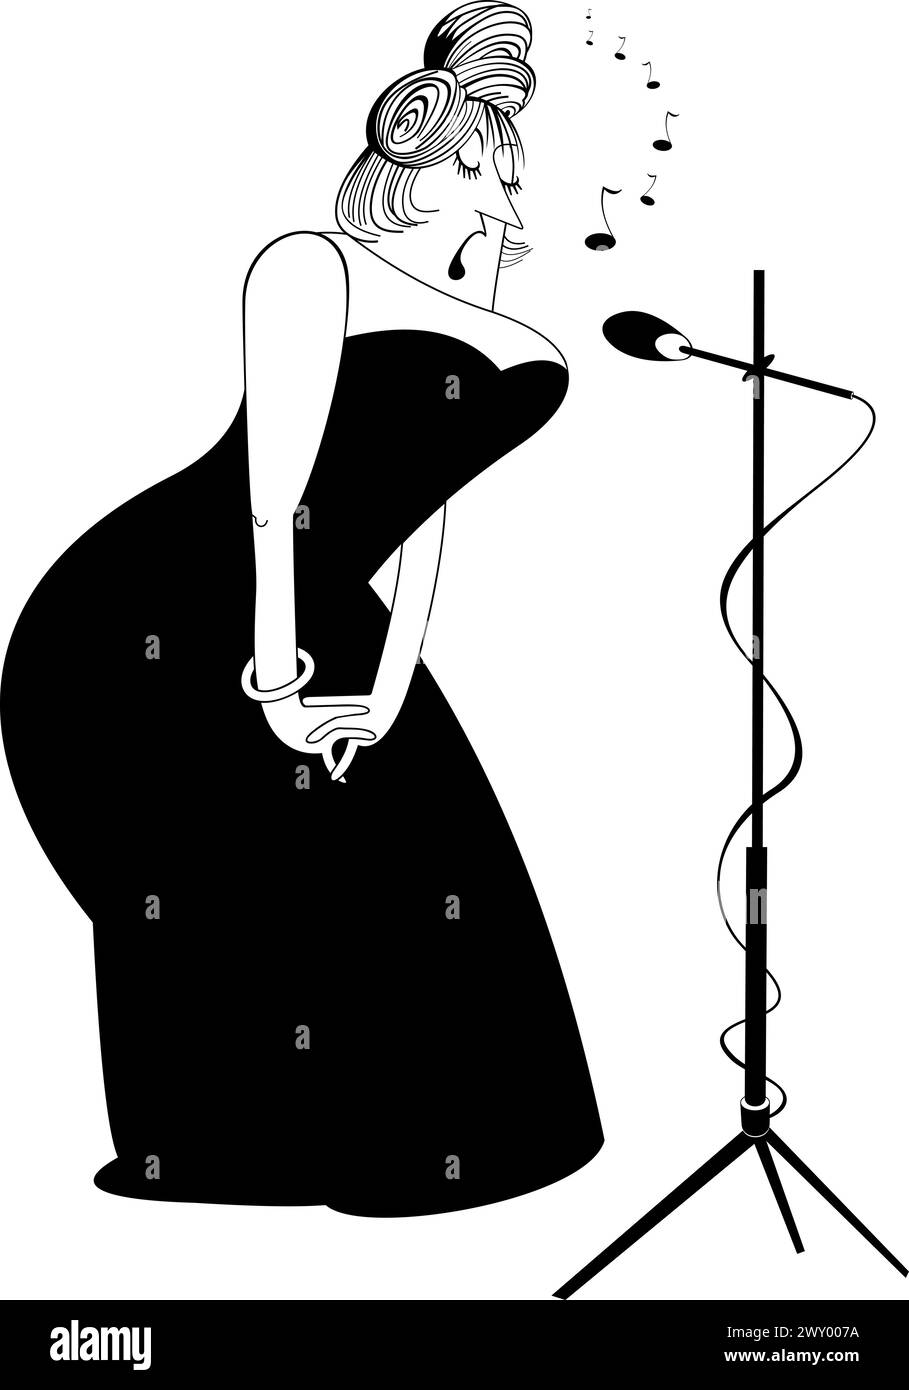 Élégante femme chanteuse sinueuse. Bande dessinée élégante femme courbée chante au microphone avec une grande inspiration Illustration de Vecteur